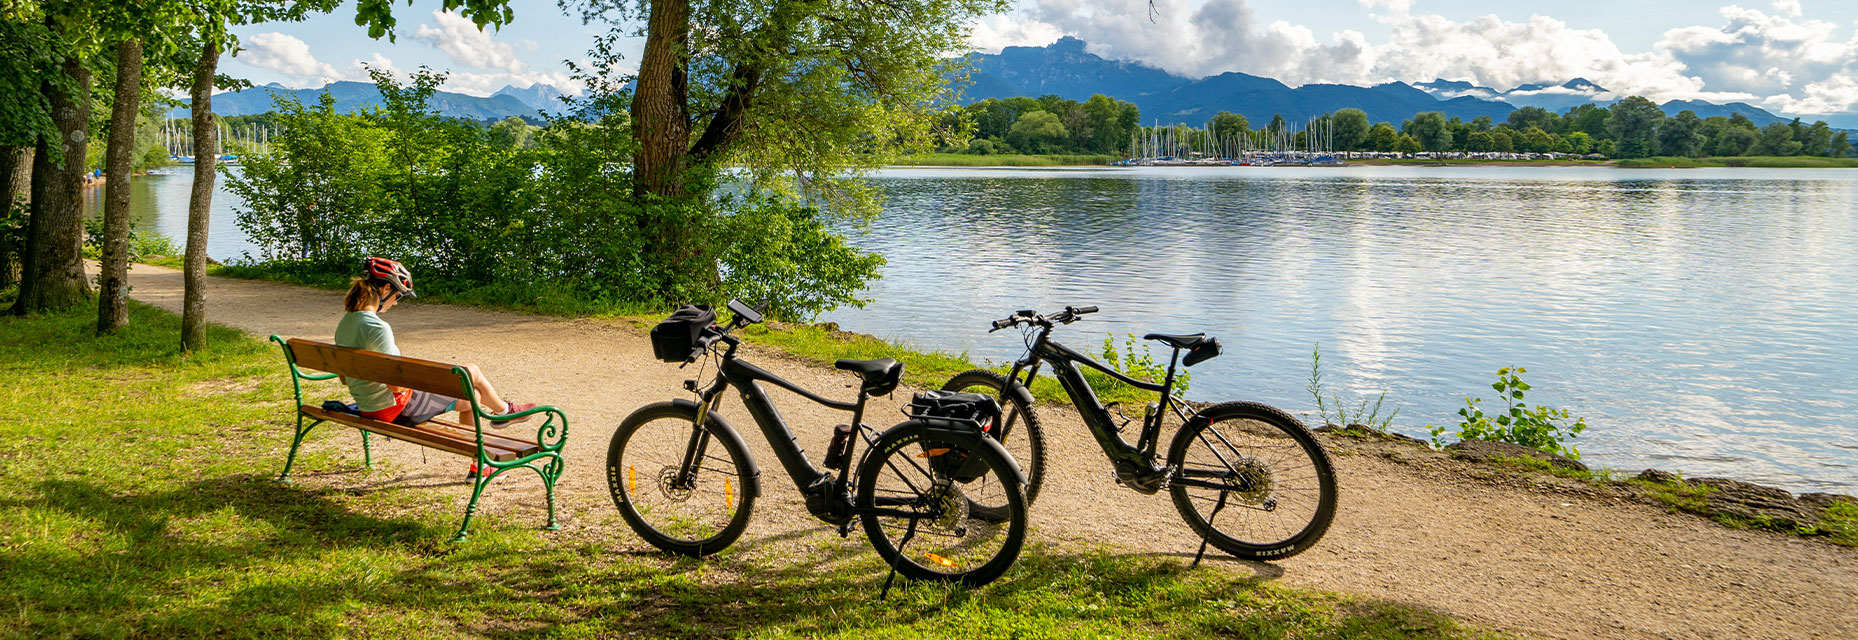 zwei Räder und Radfahrer auf Bank mit See